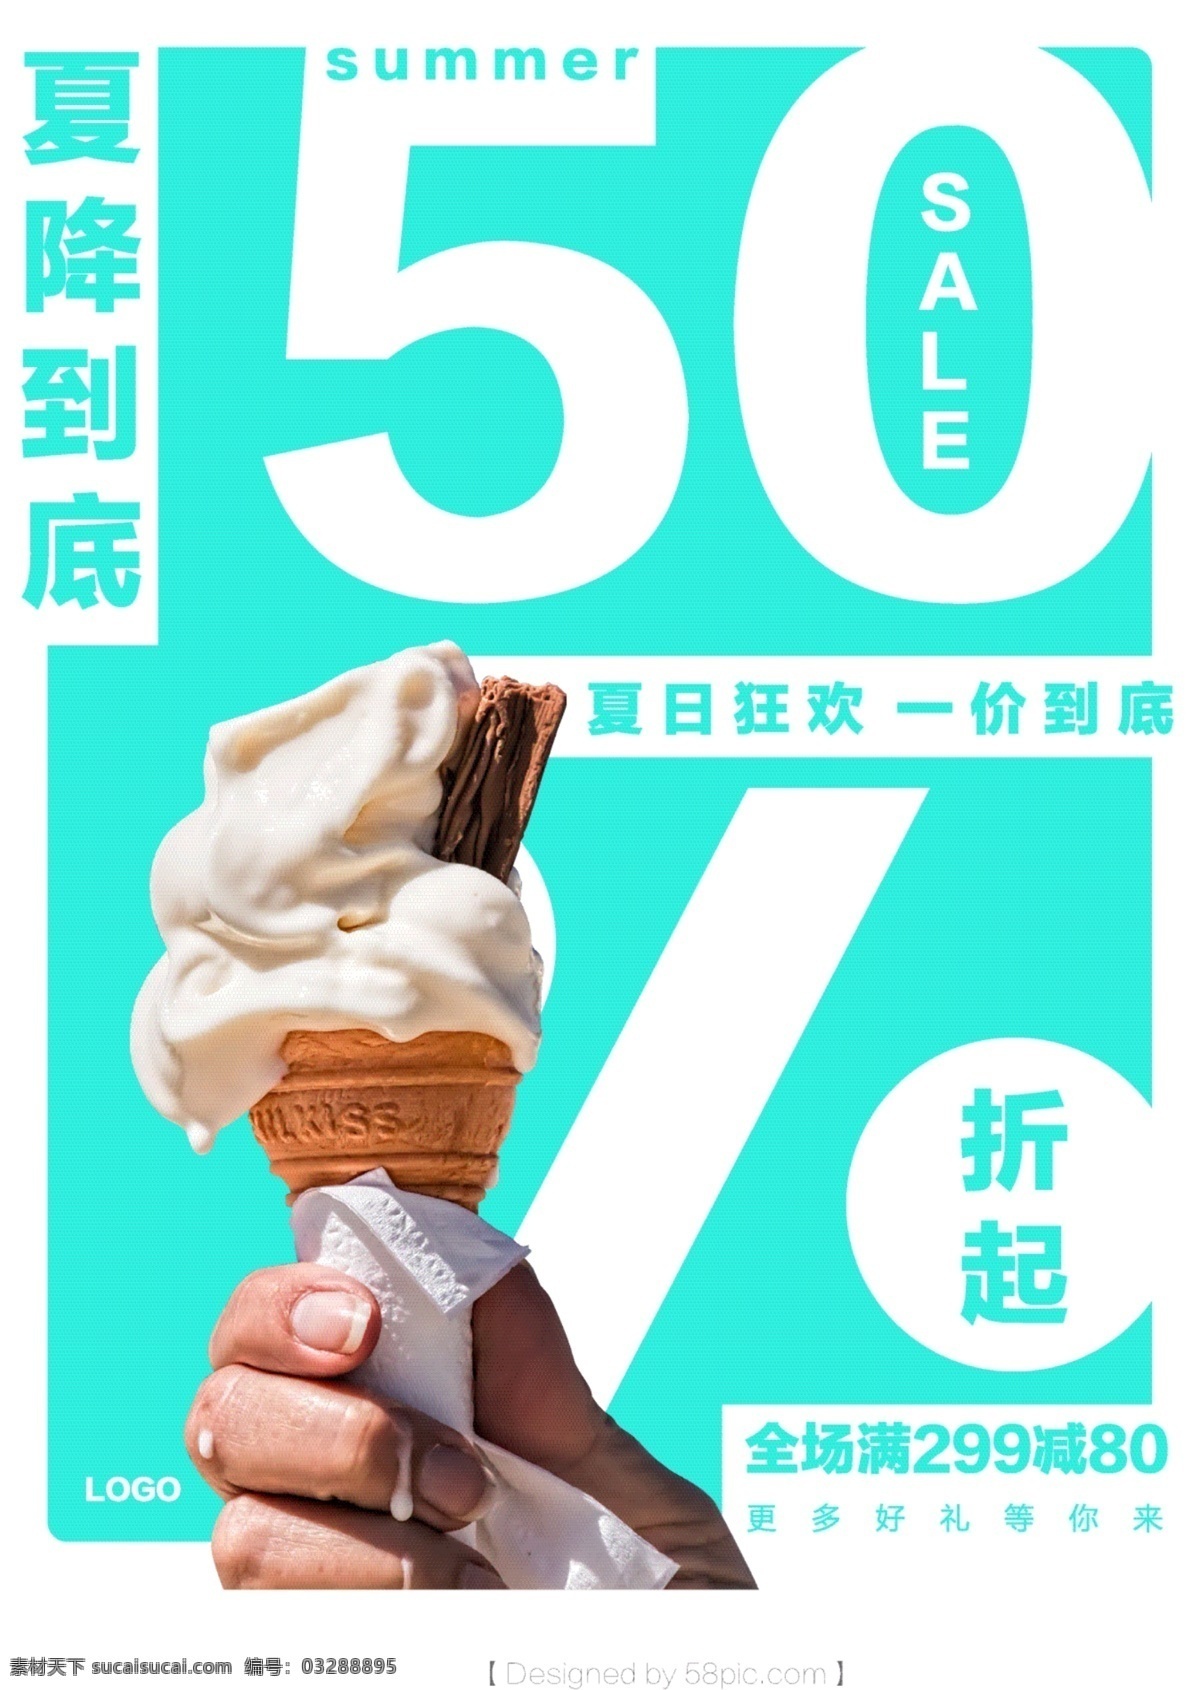 简约 大气 夏日 促销 海报 创意 冰淇淋 店 甜筒 夏日促销海报 夏日海滩 夏日素材 夏日大促销